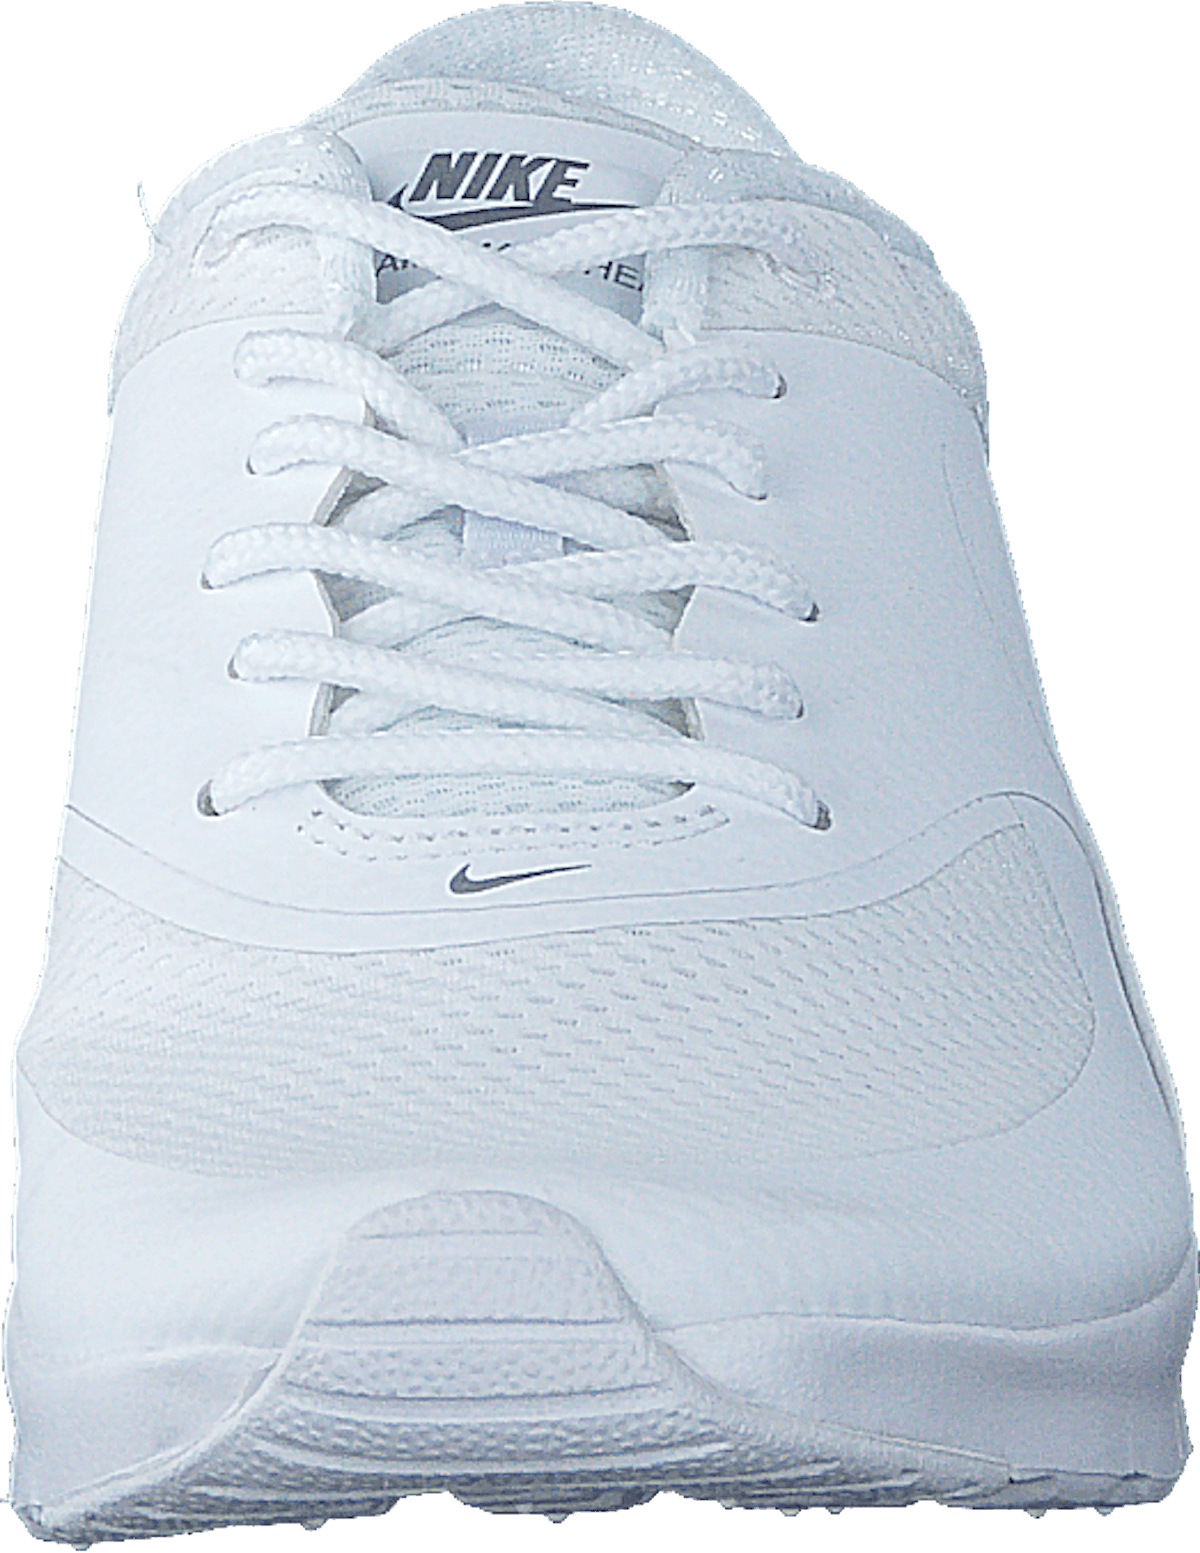 Nike Air Max Thea GG White/White-Metallic Silver